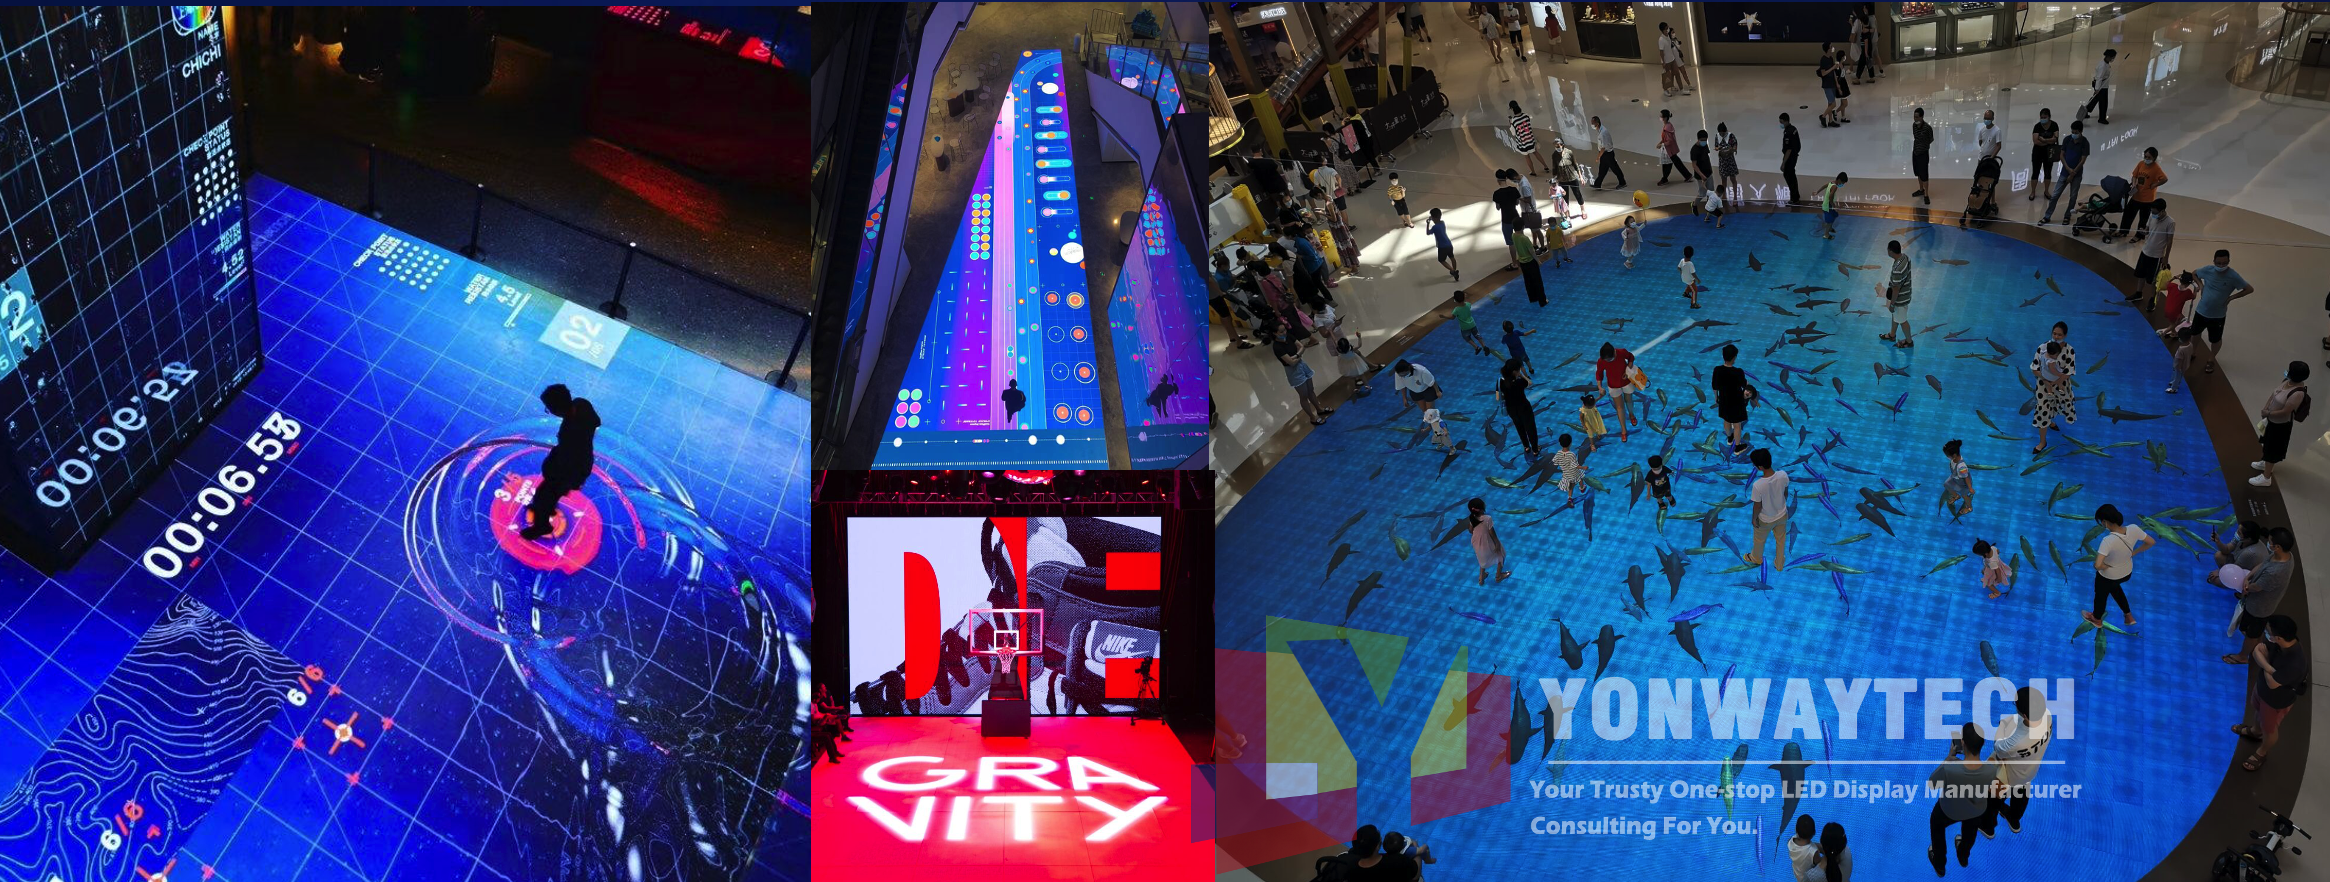 shopping center pista de dança led display interação video wall center